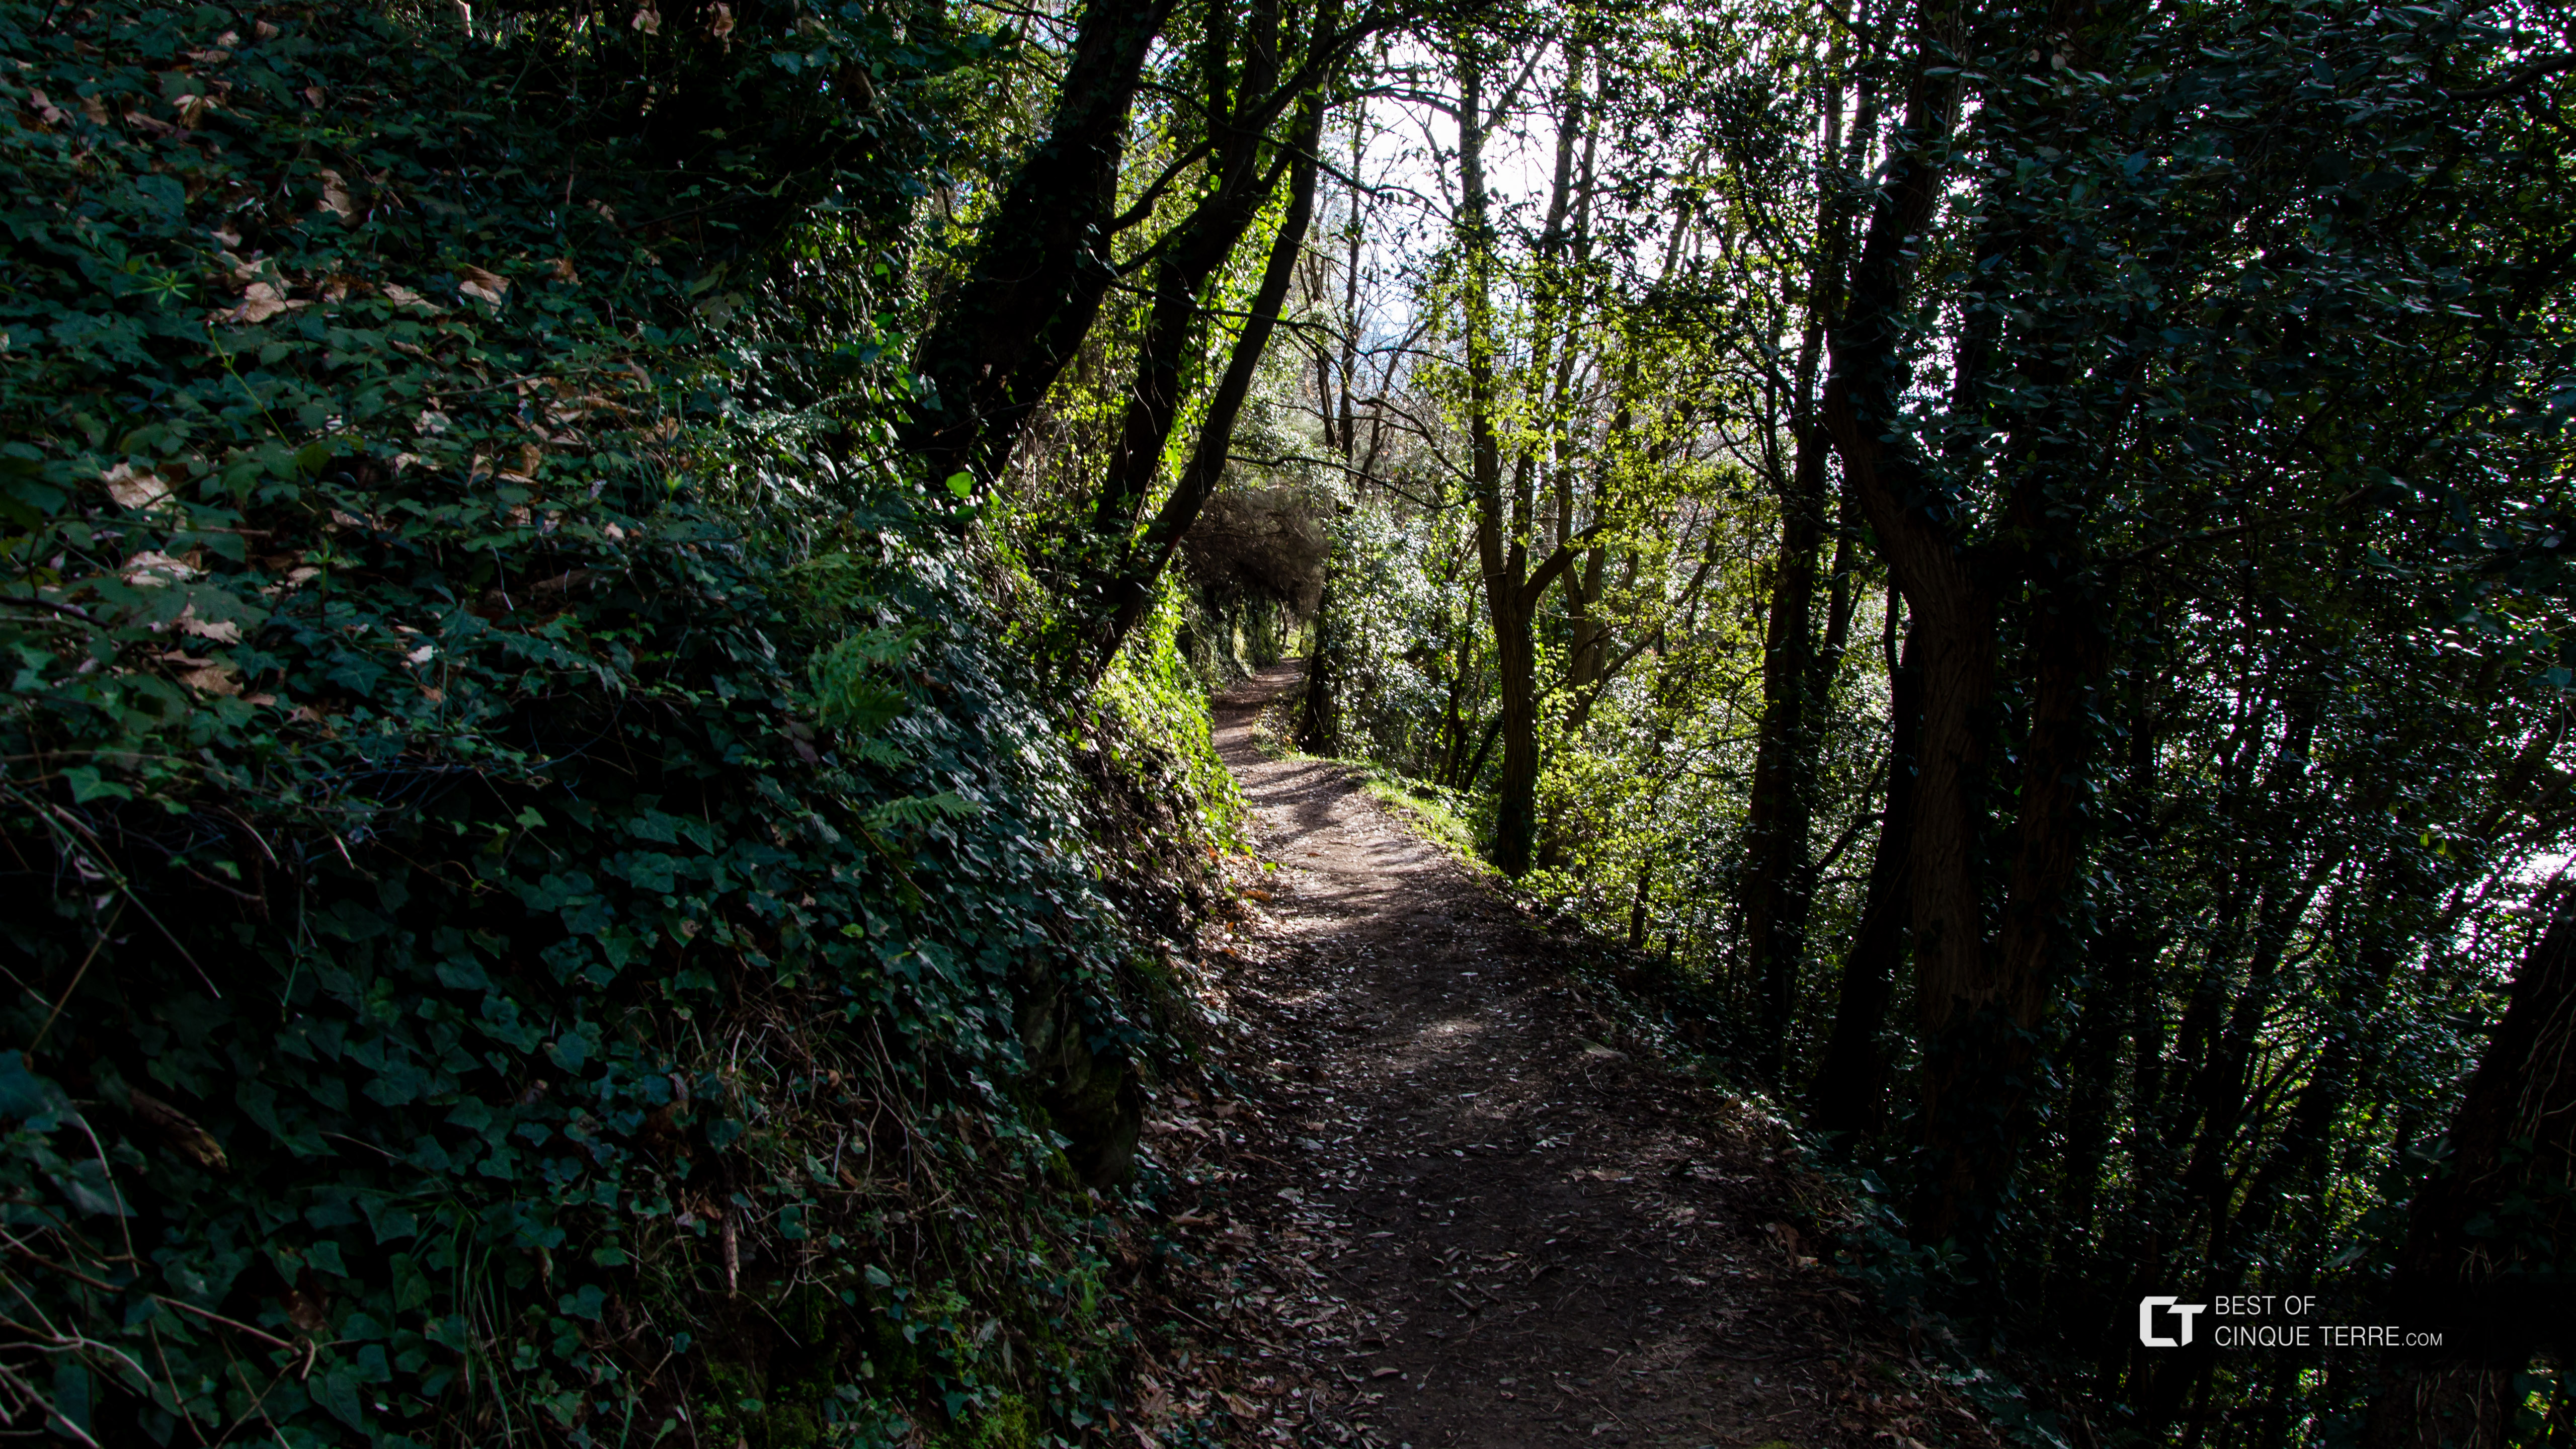 Le sentier long de Corniglia à Manarola, via Volastra, Sentiers, Cinque Terre, Italie